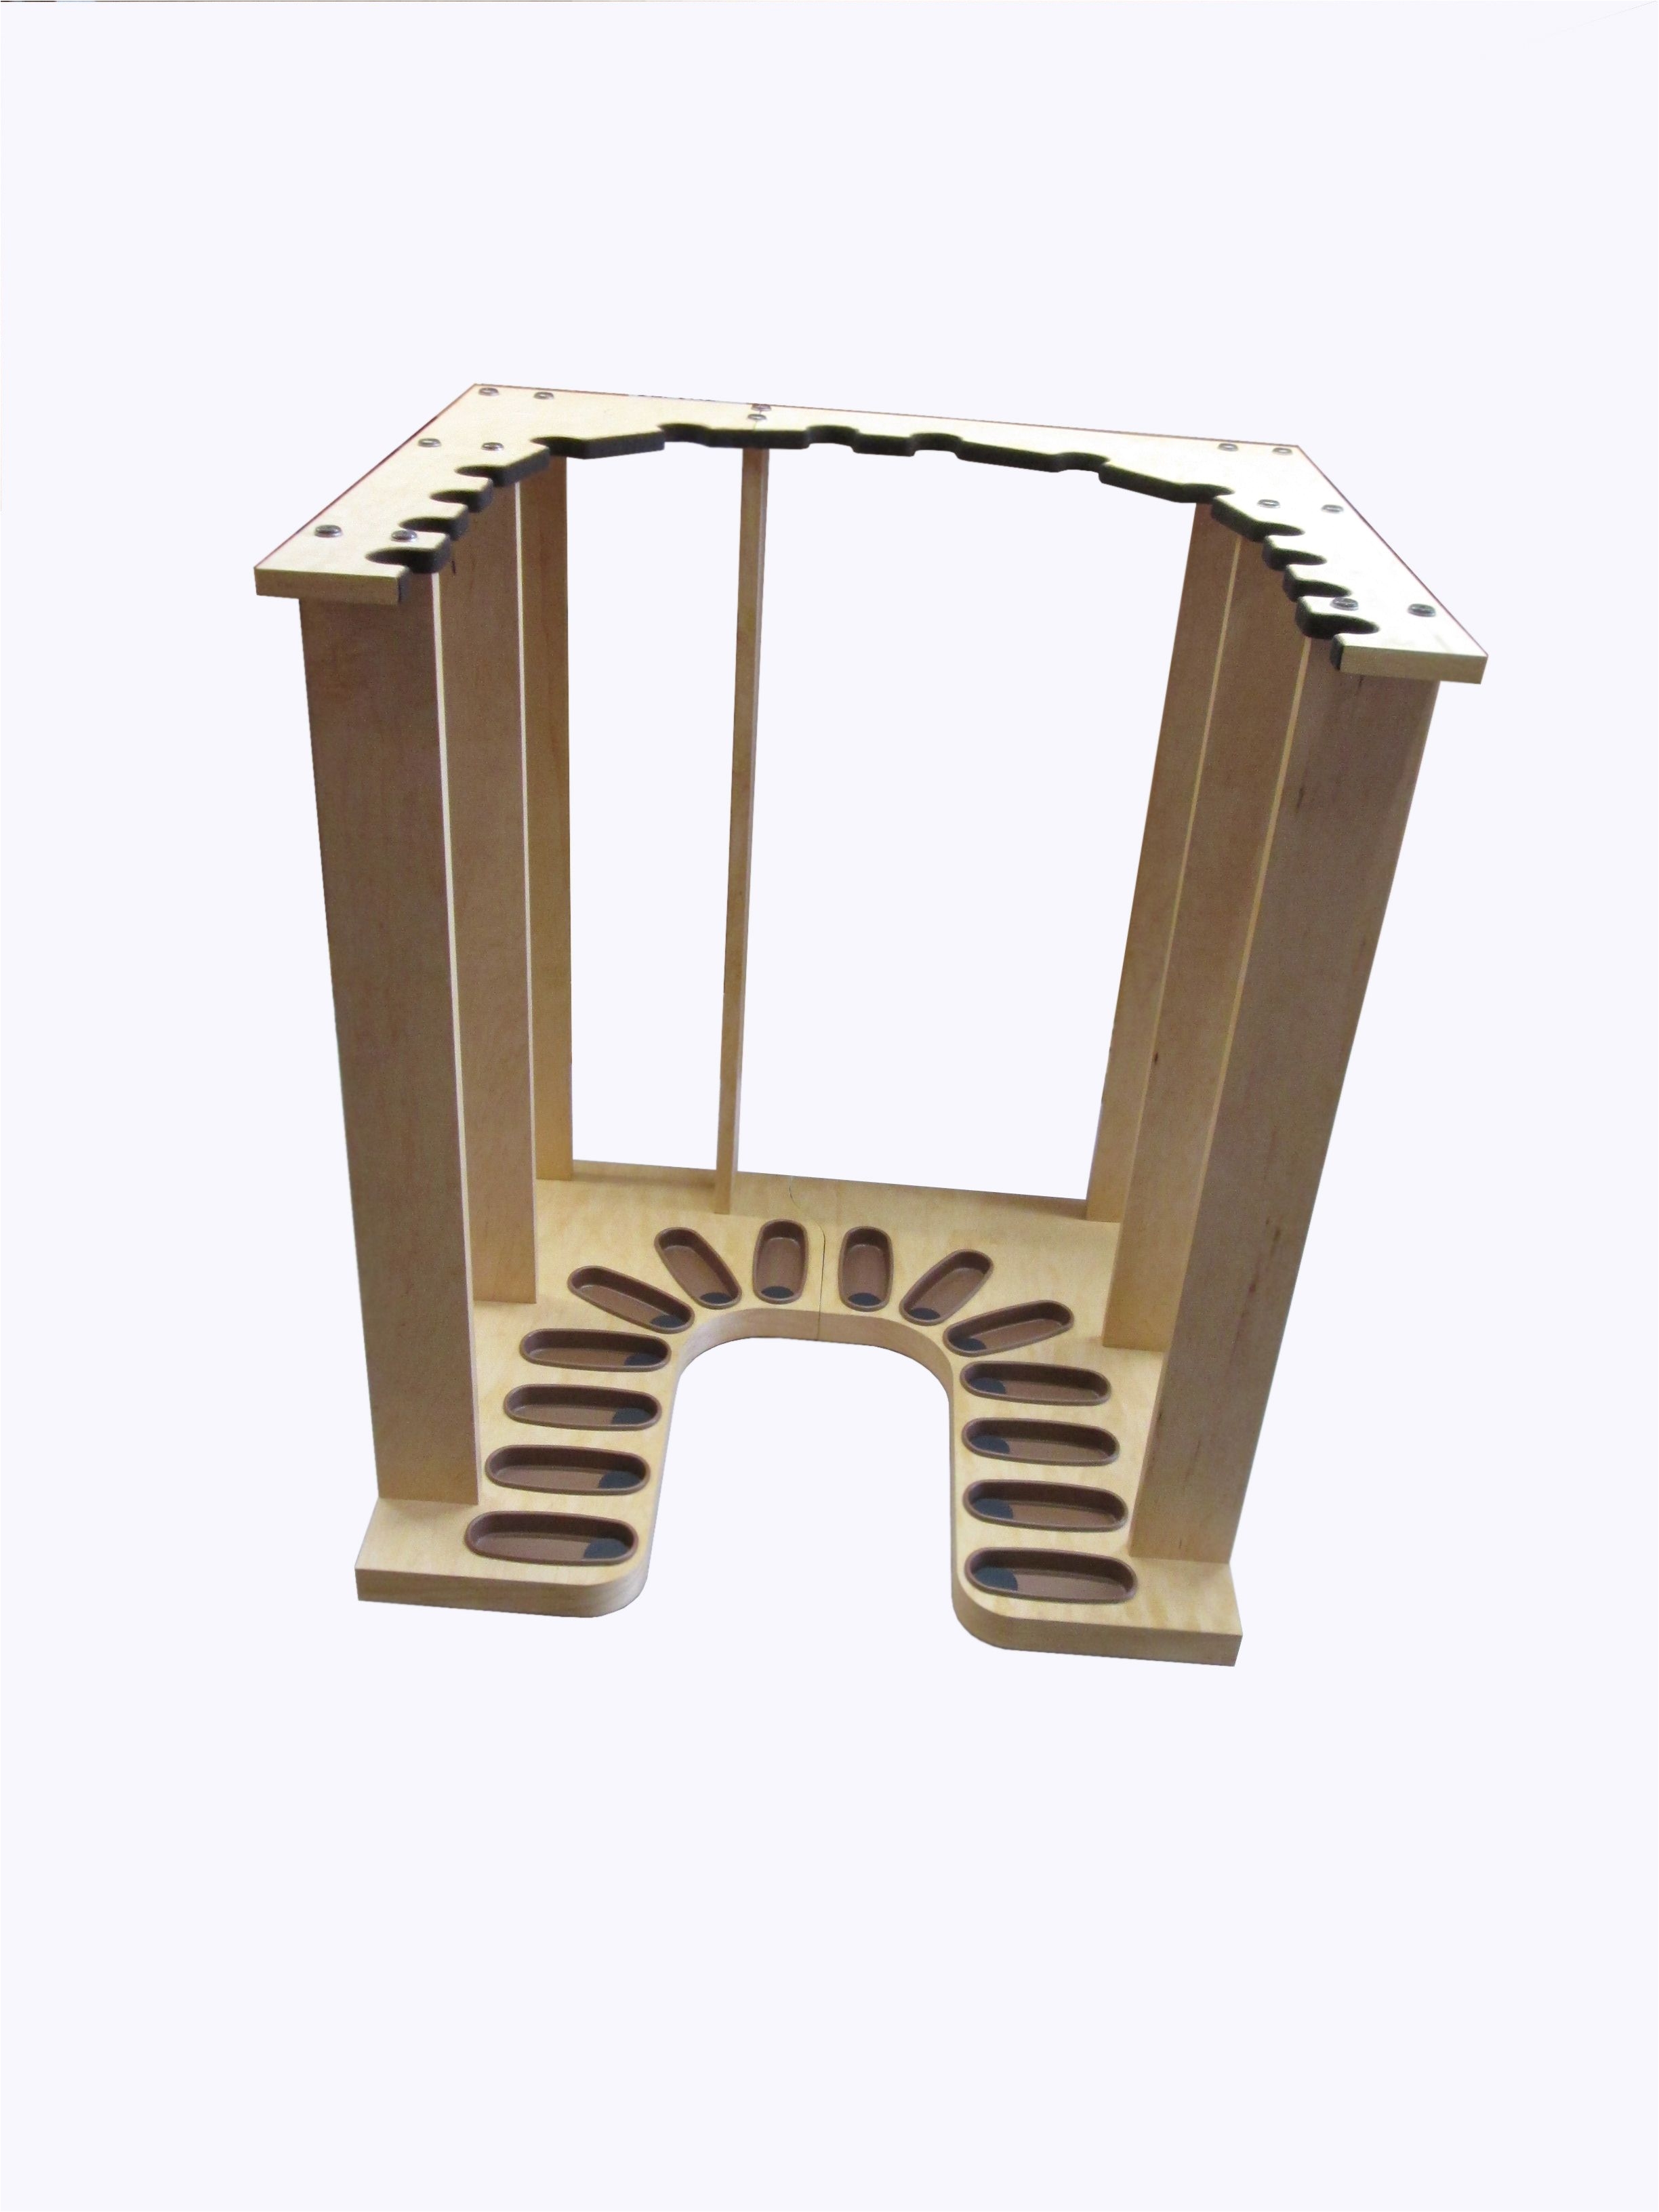 u shaped vertical gun rack for a safe or closet www gun racks